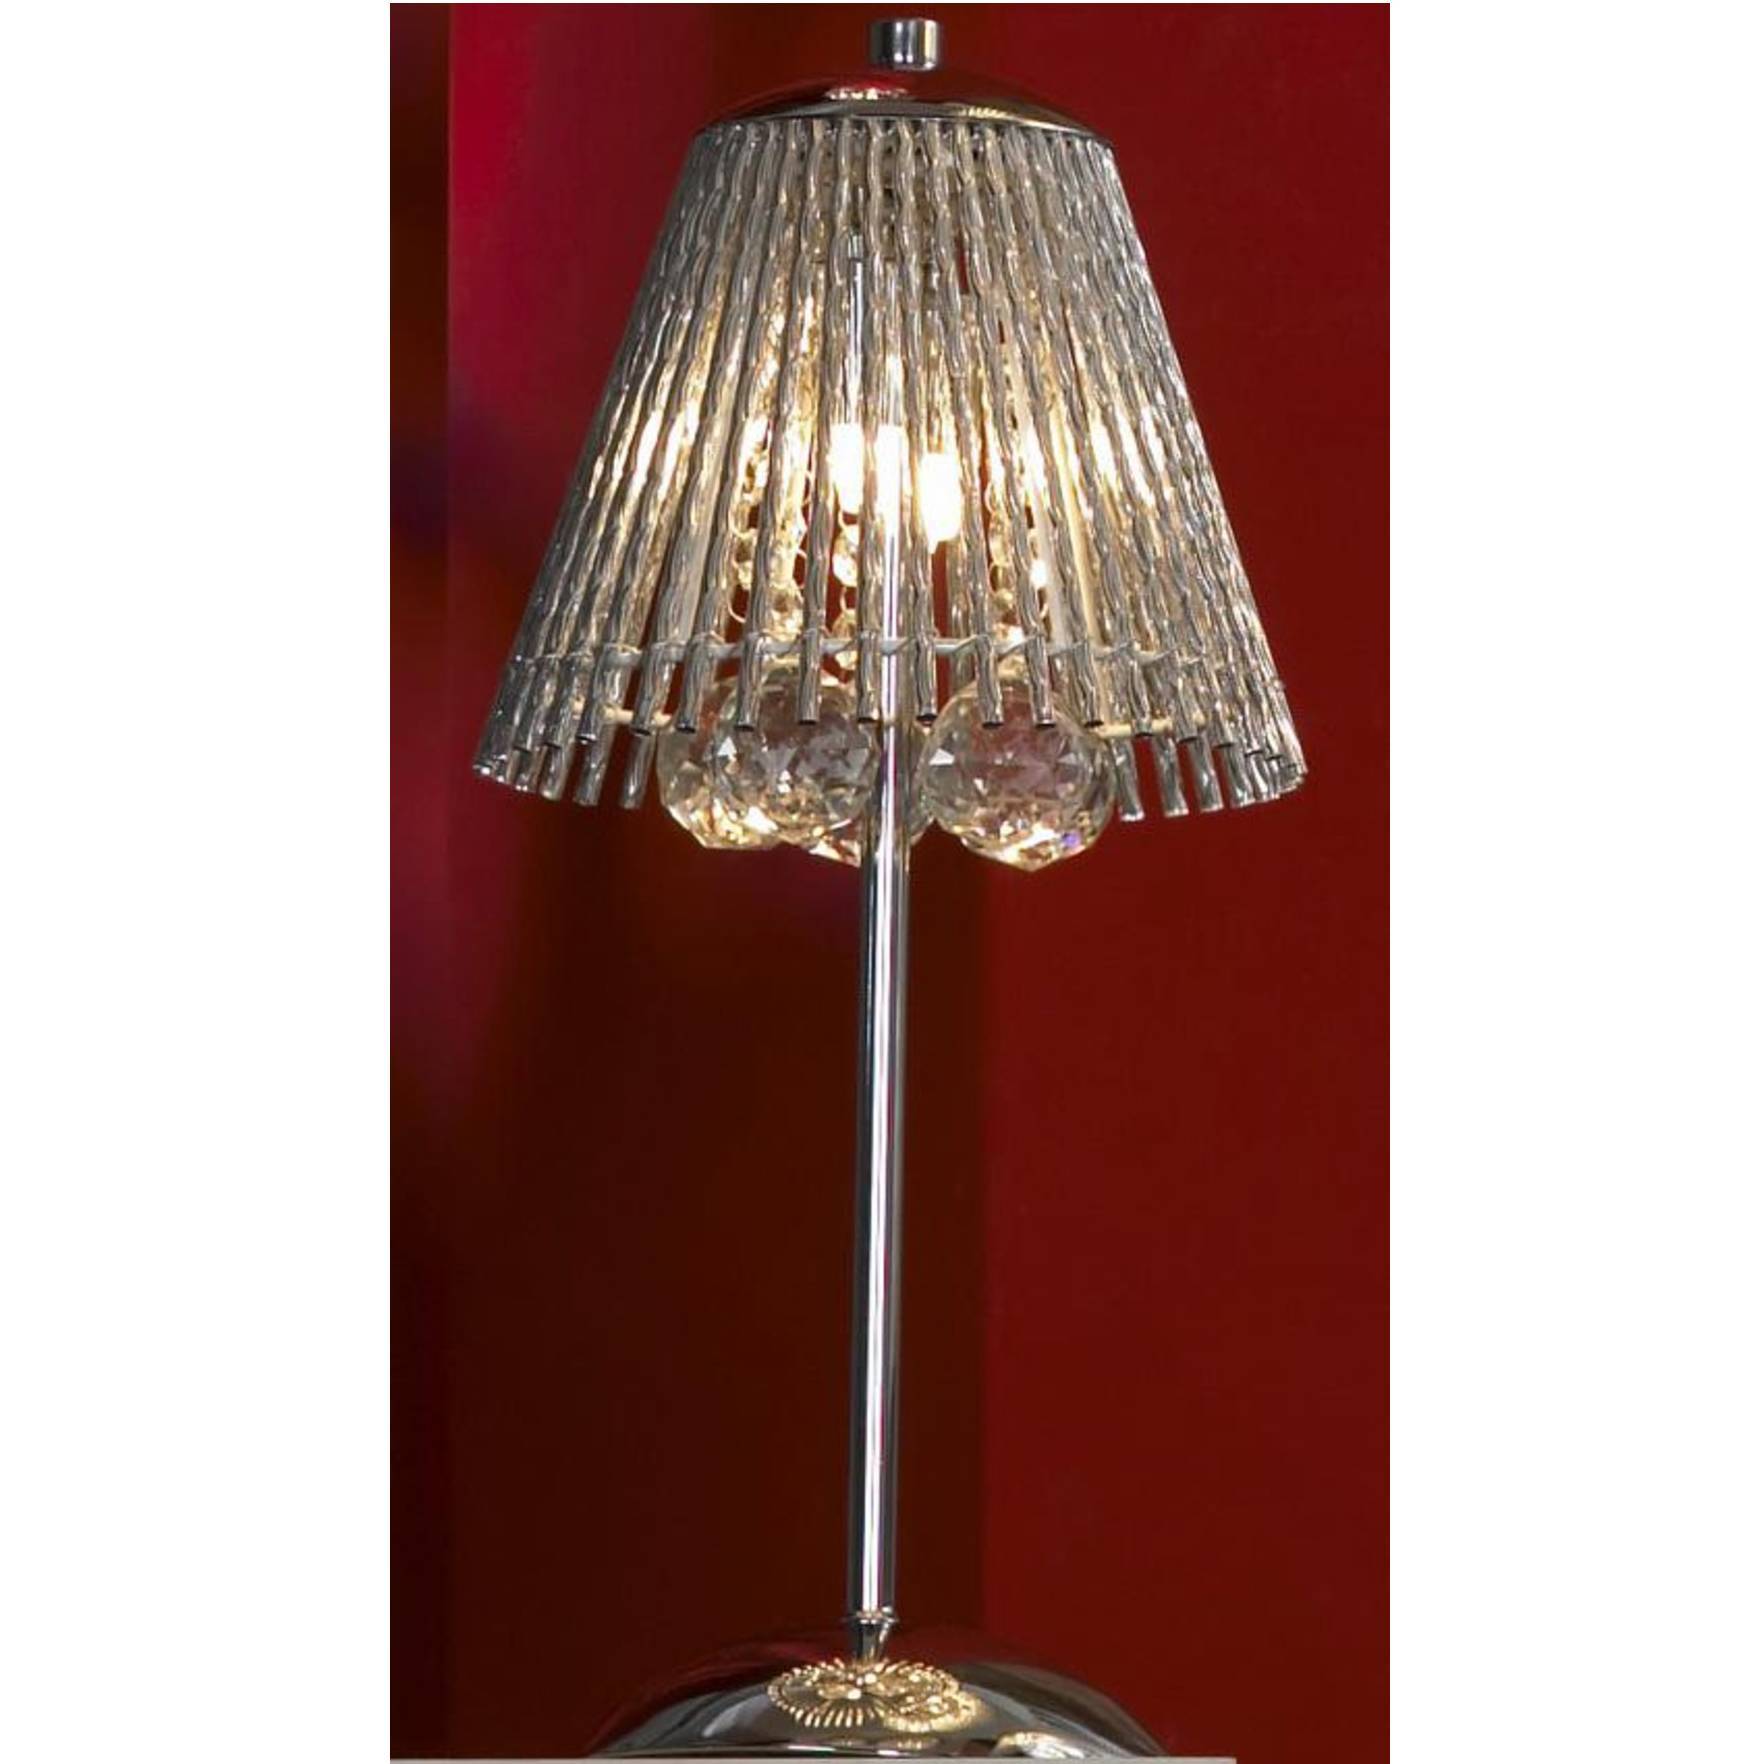 Настольная лампа Lussole Piagge LSC-8404-02